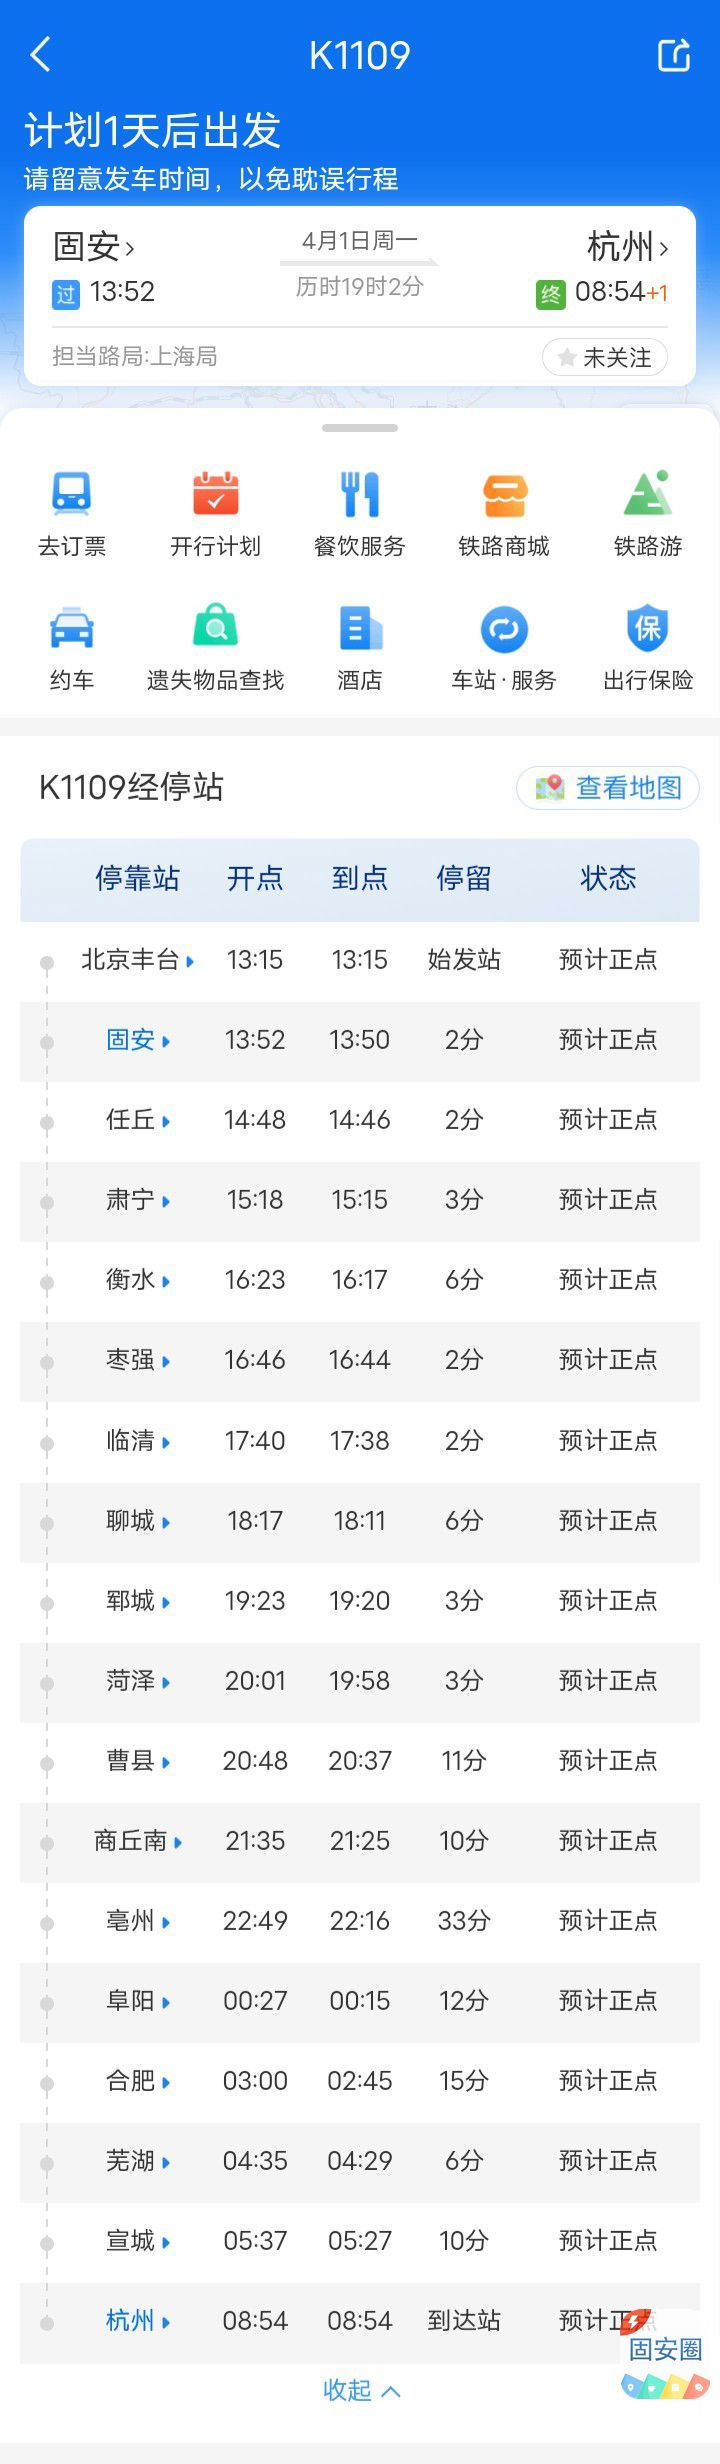 固安站4月1日起开往直达杭州站列车4775 作者:峰华花园 帖子ID:296956 固安站,起开,开往,直达,杭州